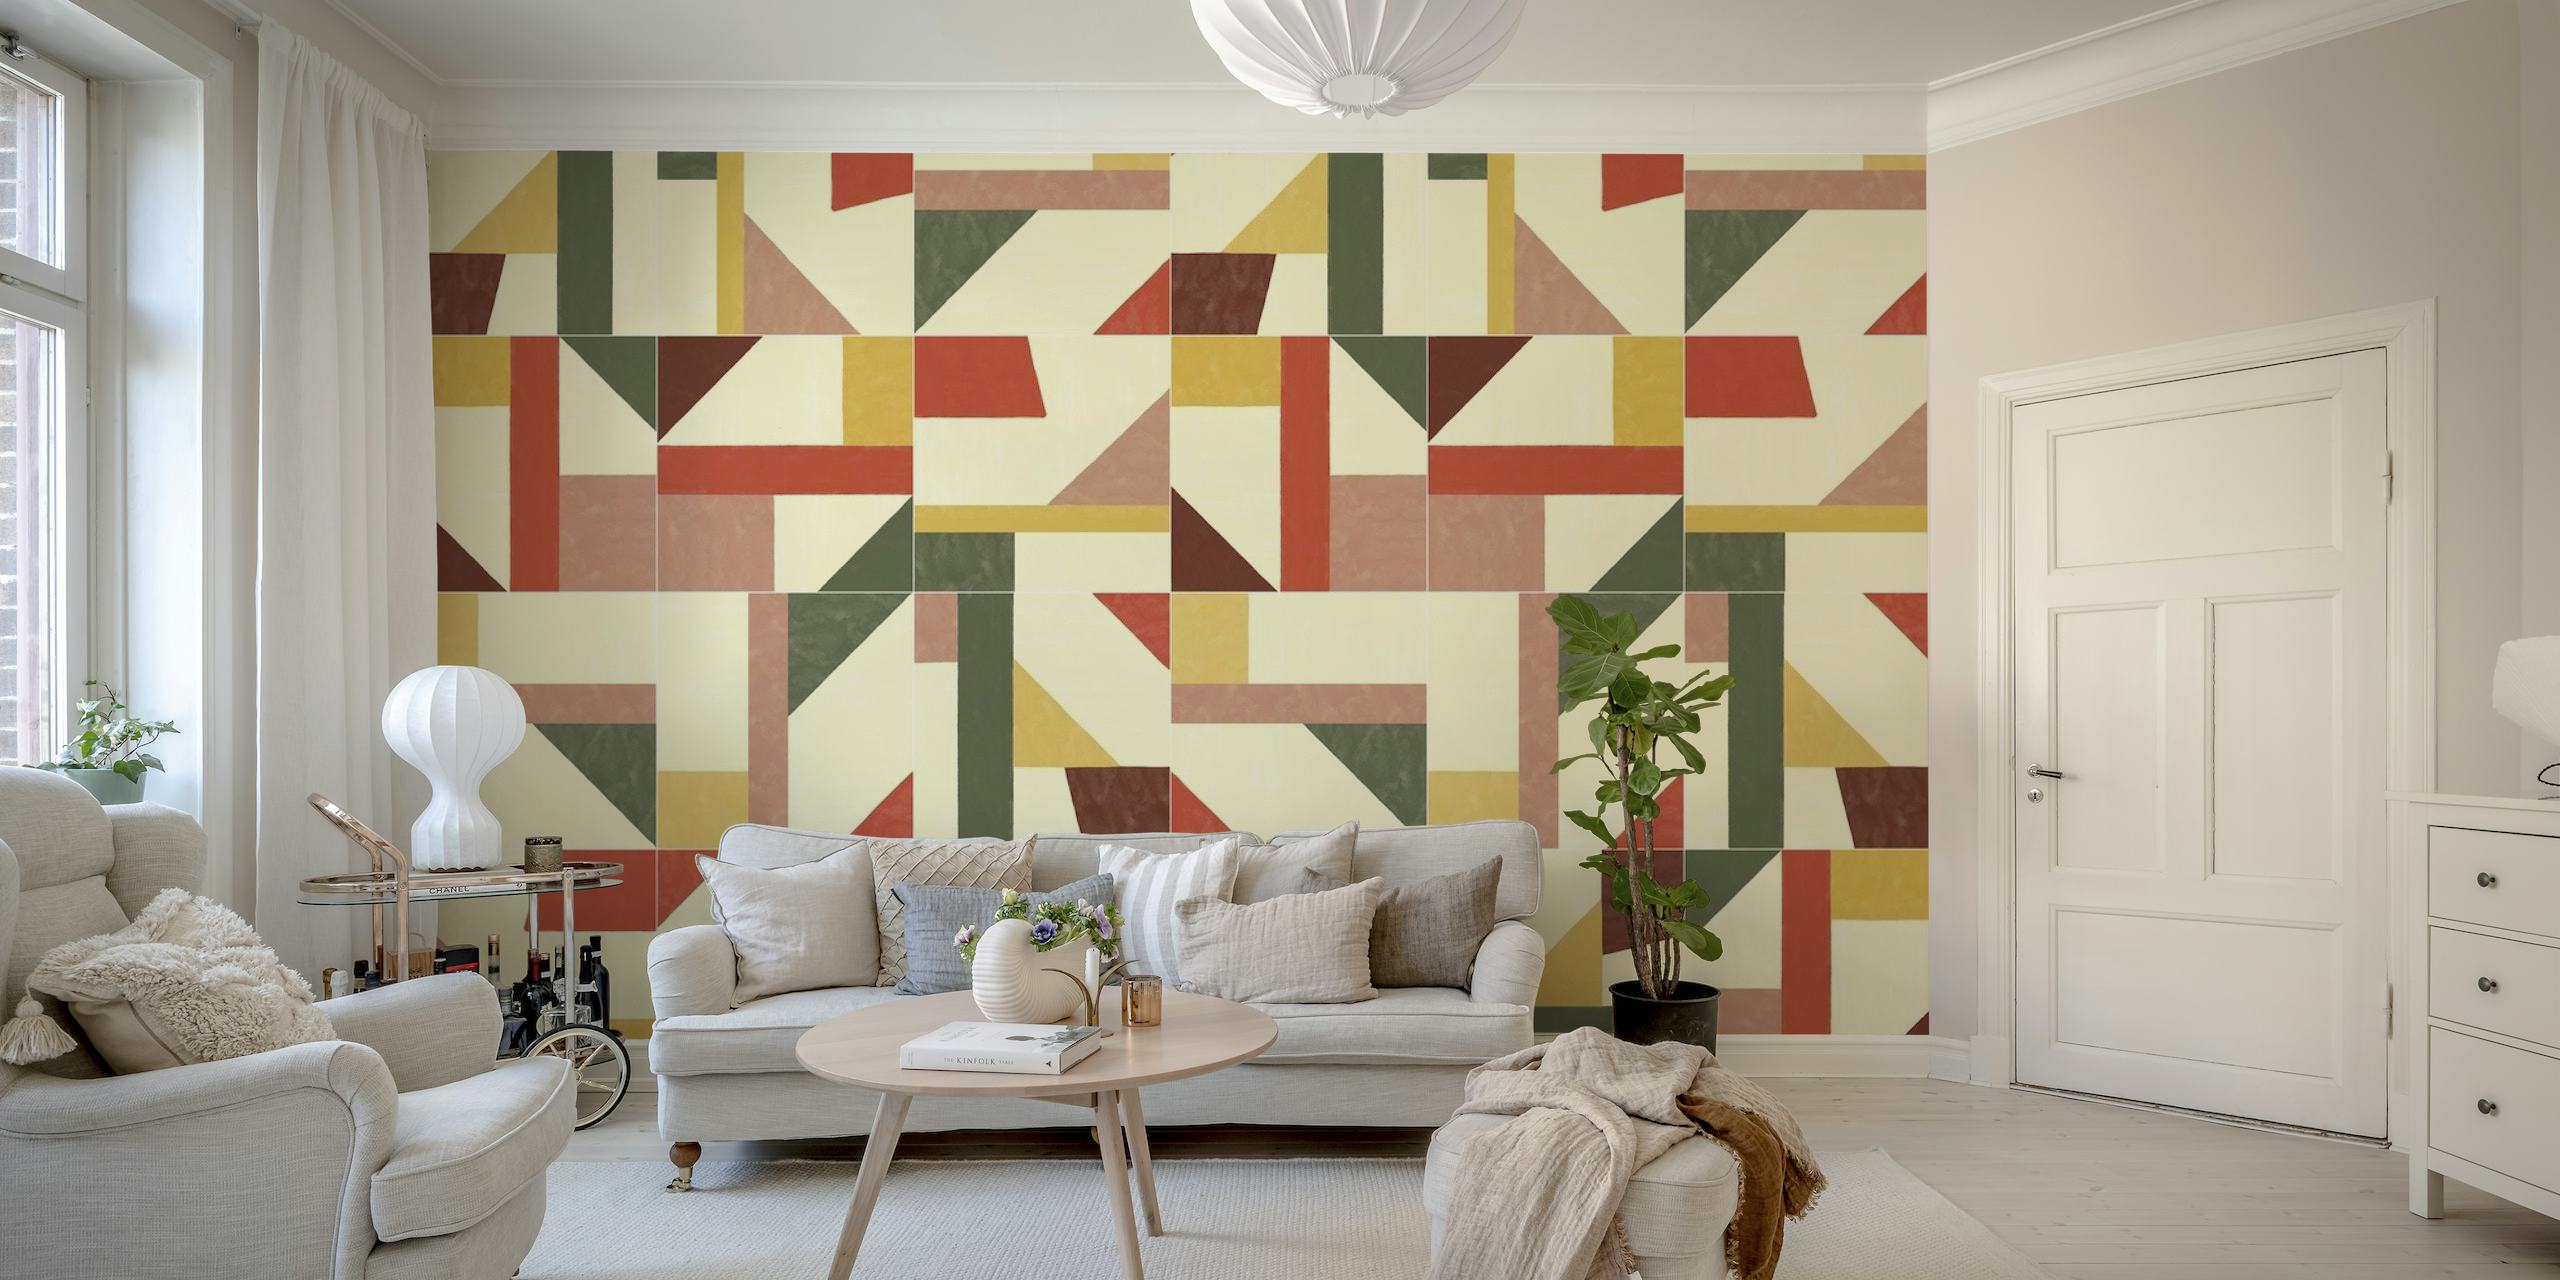 Tangram Wall Tiles Two papel de parede